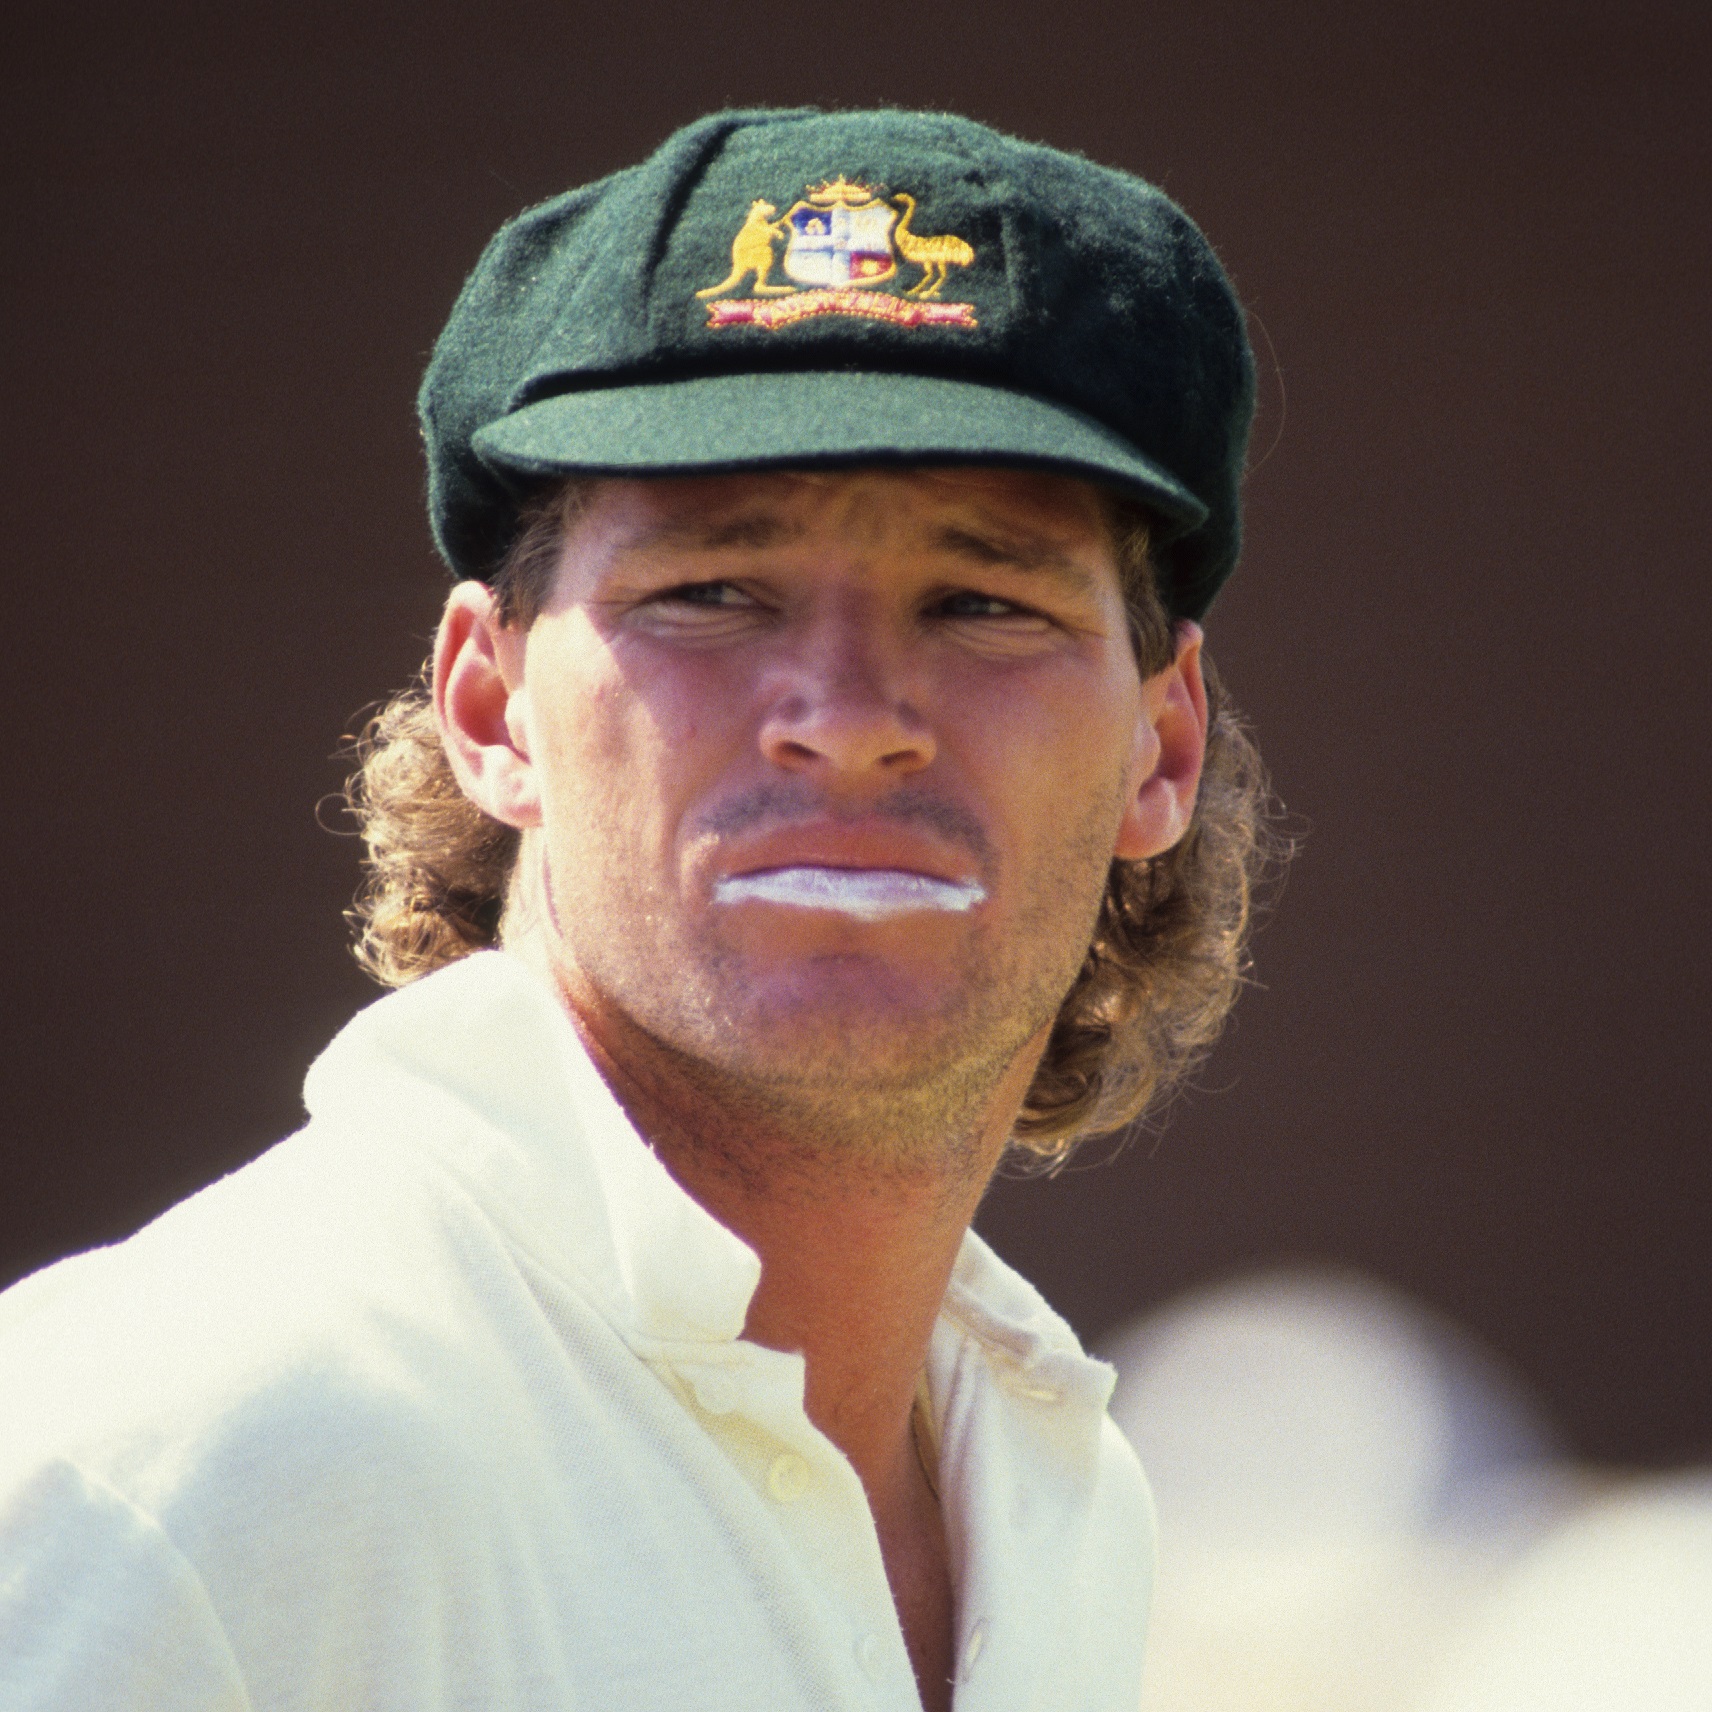 कसोटी क्रिकेटमध्ये आपले महत्त्व सिद्ध करूनही ऑस्ट्रेलियाचे माजी क्रिकेटपटू व प्रशिक्षक डीन जोन्स एकदिवसीय प्रकारातील फलंदाजी व चपळ क्षेत्ररक्षणासाठी विशेष ओळखले जात. ‘आयसीसी’ क्रिकेट क्रमवारीअगोदर म्हणजे १९९०च्या दशकाच्या सुरुवातीपर्यंत ते जगातील सर्वोत्तम एकदिवसीय फलंदाजांपैकी एक मानले जात होते. 